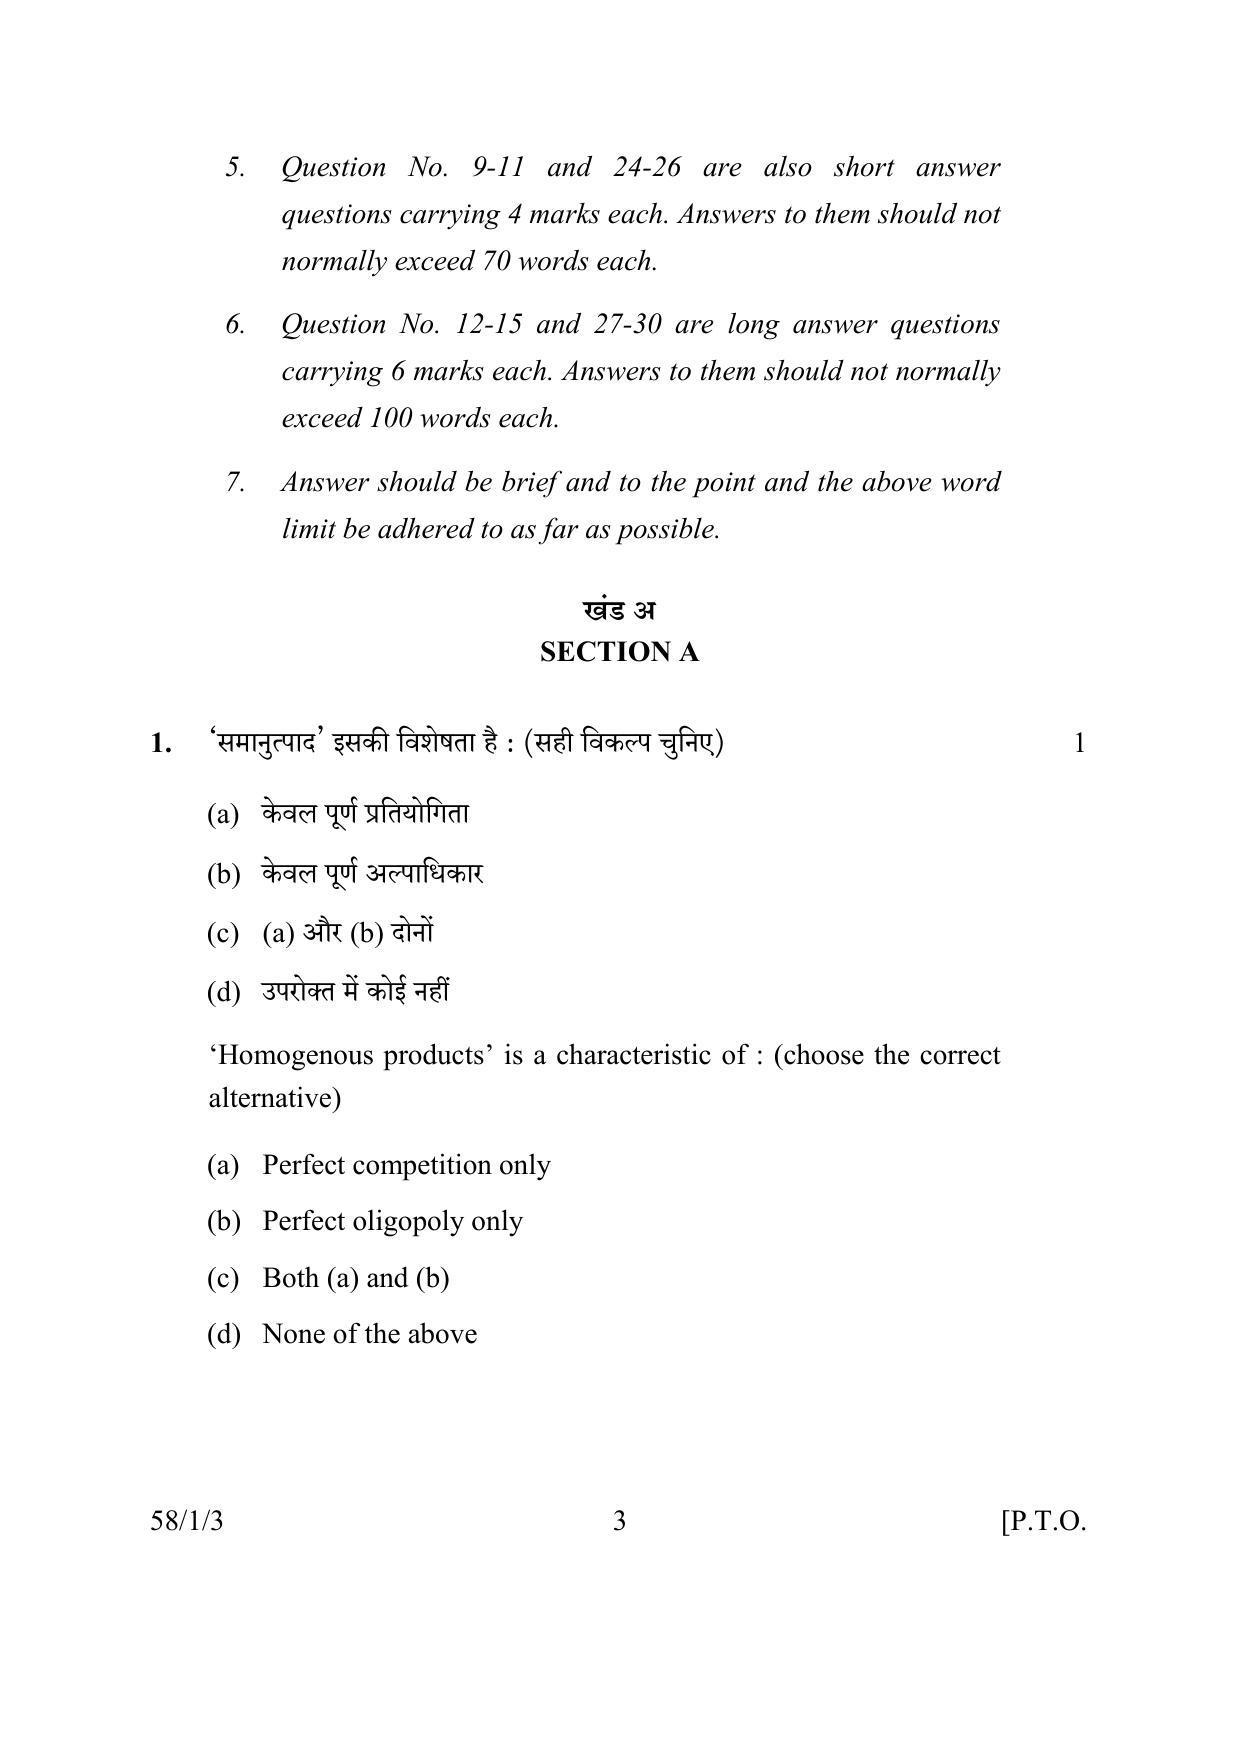 CBSE Class 12 58-1-3 ECONOMICS 2016 Question Paper - Page 3